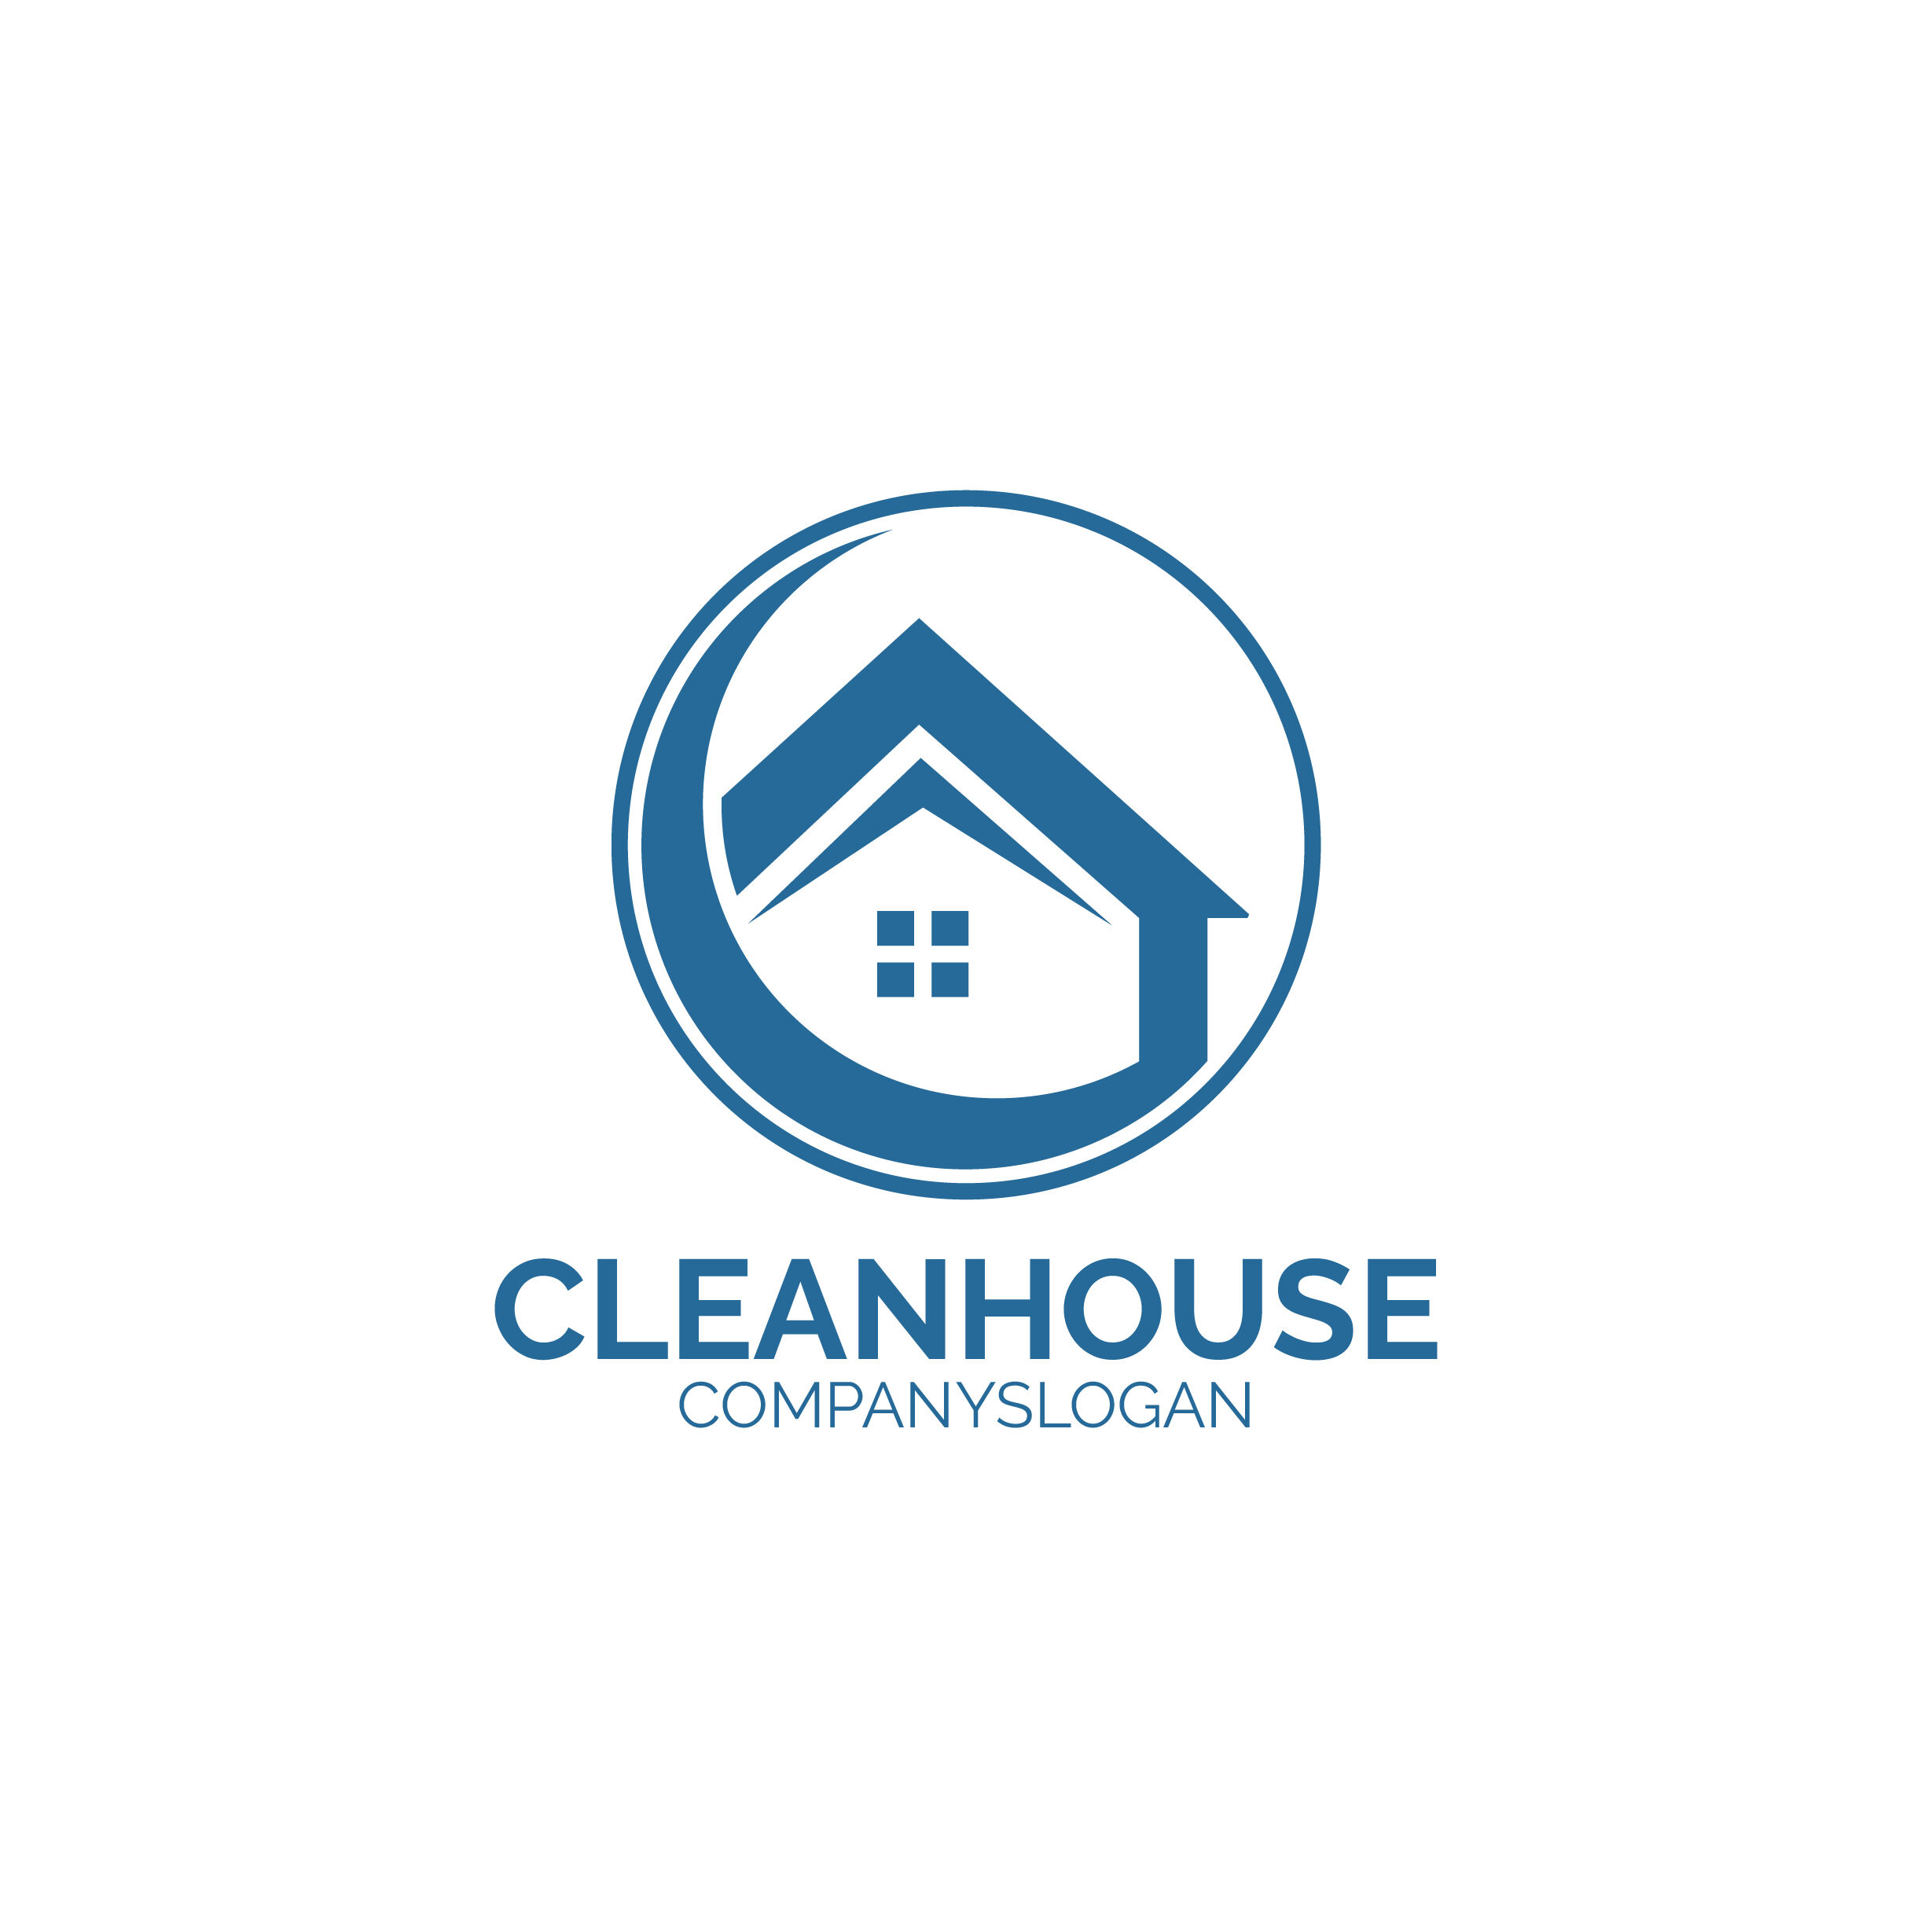 wash house logo